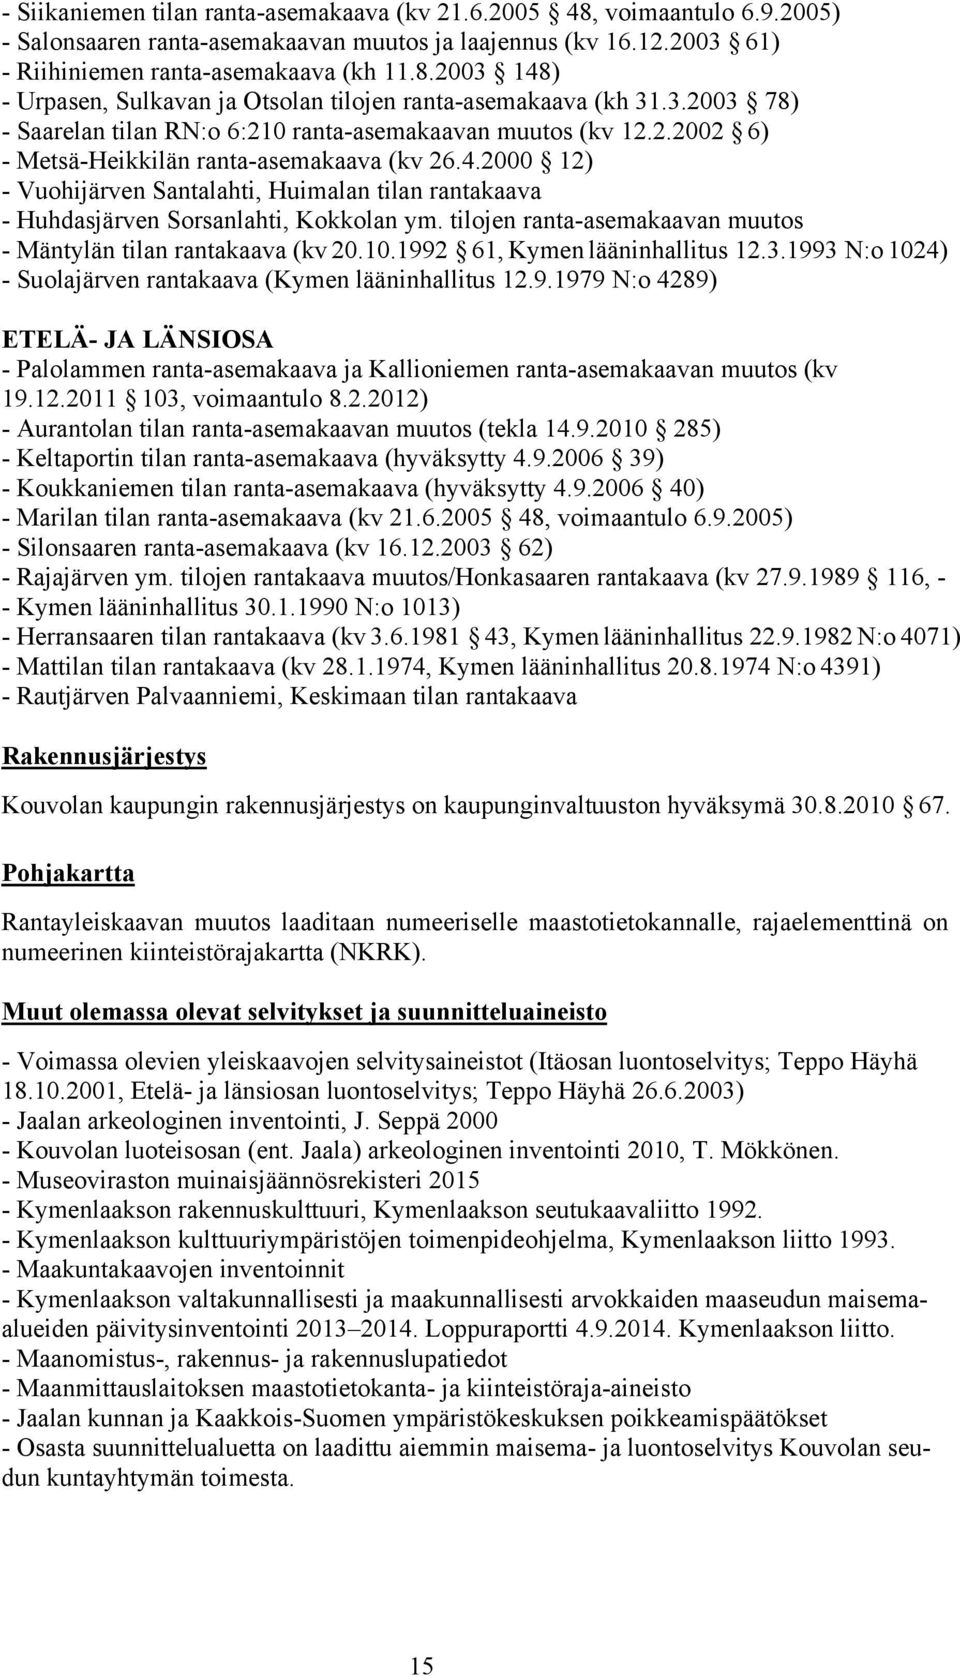 2000 12) - Vuohijärven Santalahti, Huimalan tilan rantakaava - Huhdasjärven Sorsanlahti, Kokkolan ym. tilojen ranta-asemakaavan muutos - Mäntylän tilan rantakaava (kv 20.10.